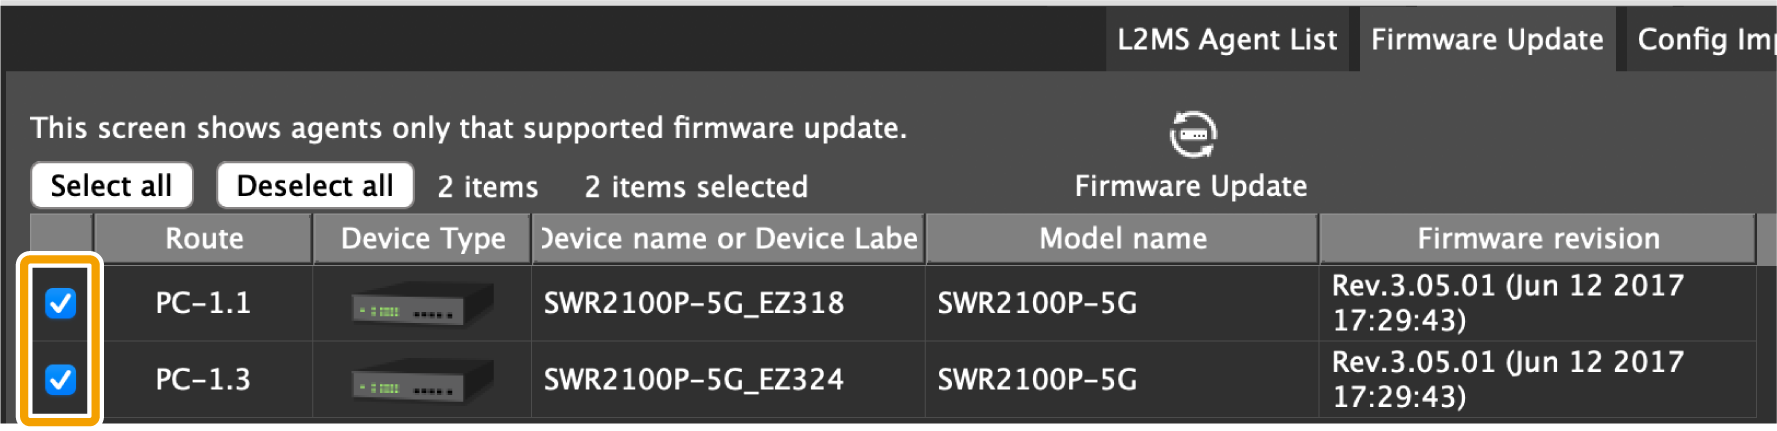 firmware update 9